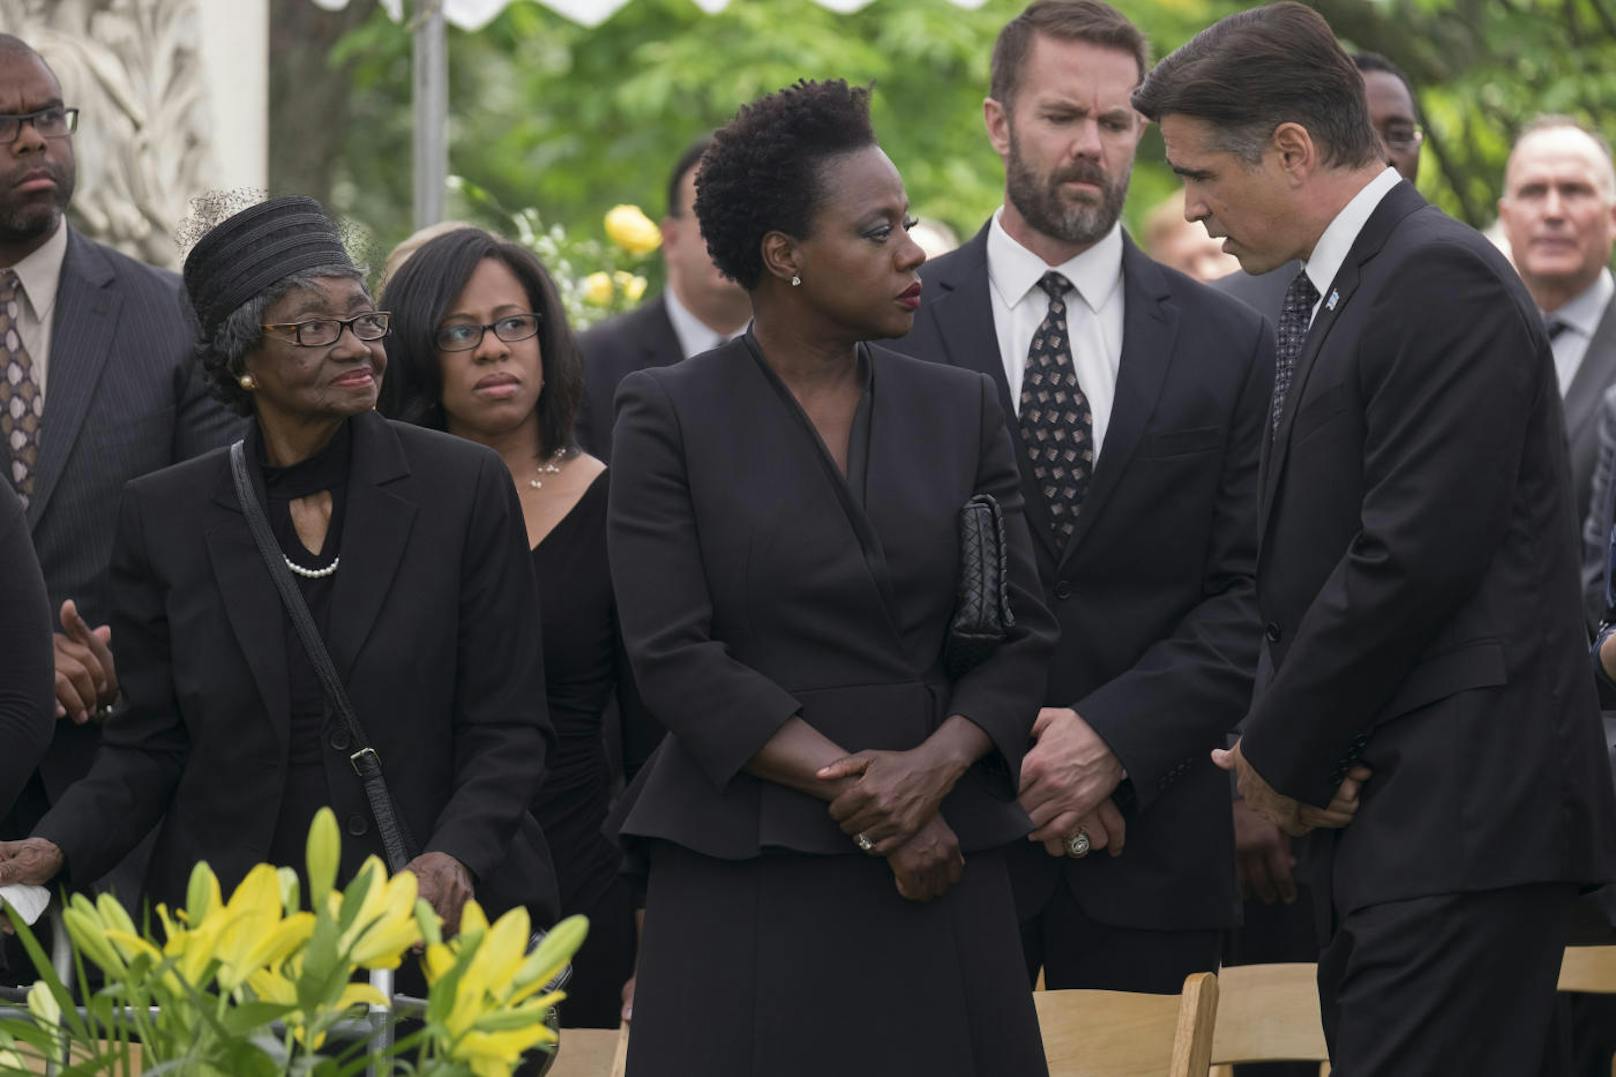 Politiker Colin Farrell bietet der trauernden Witwe Viola Davis Unterstützung an. Als sie diese wirklich braucht, lässt er sie abblitzen